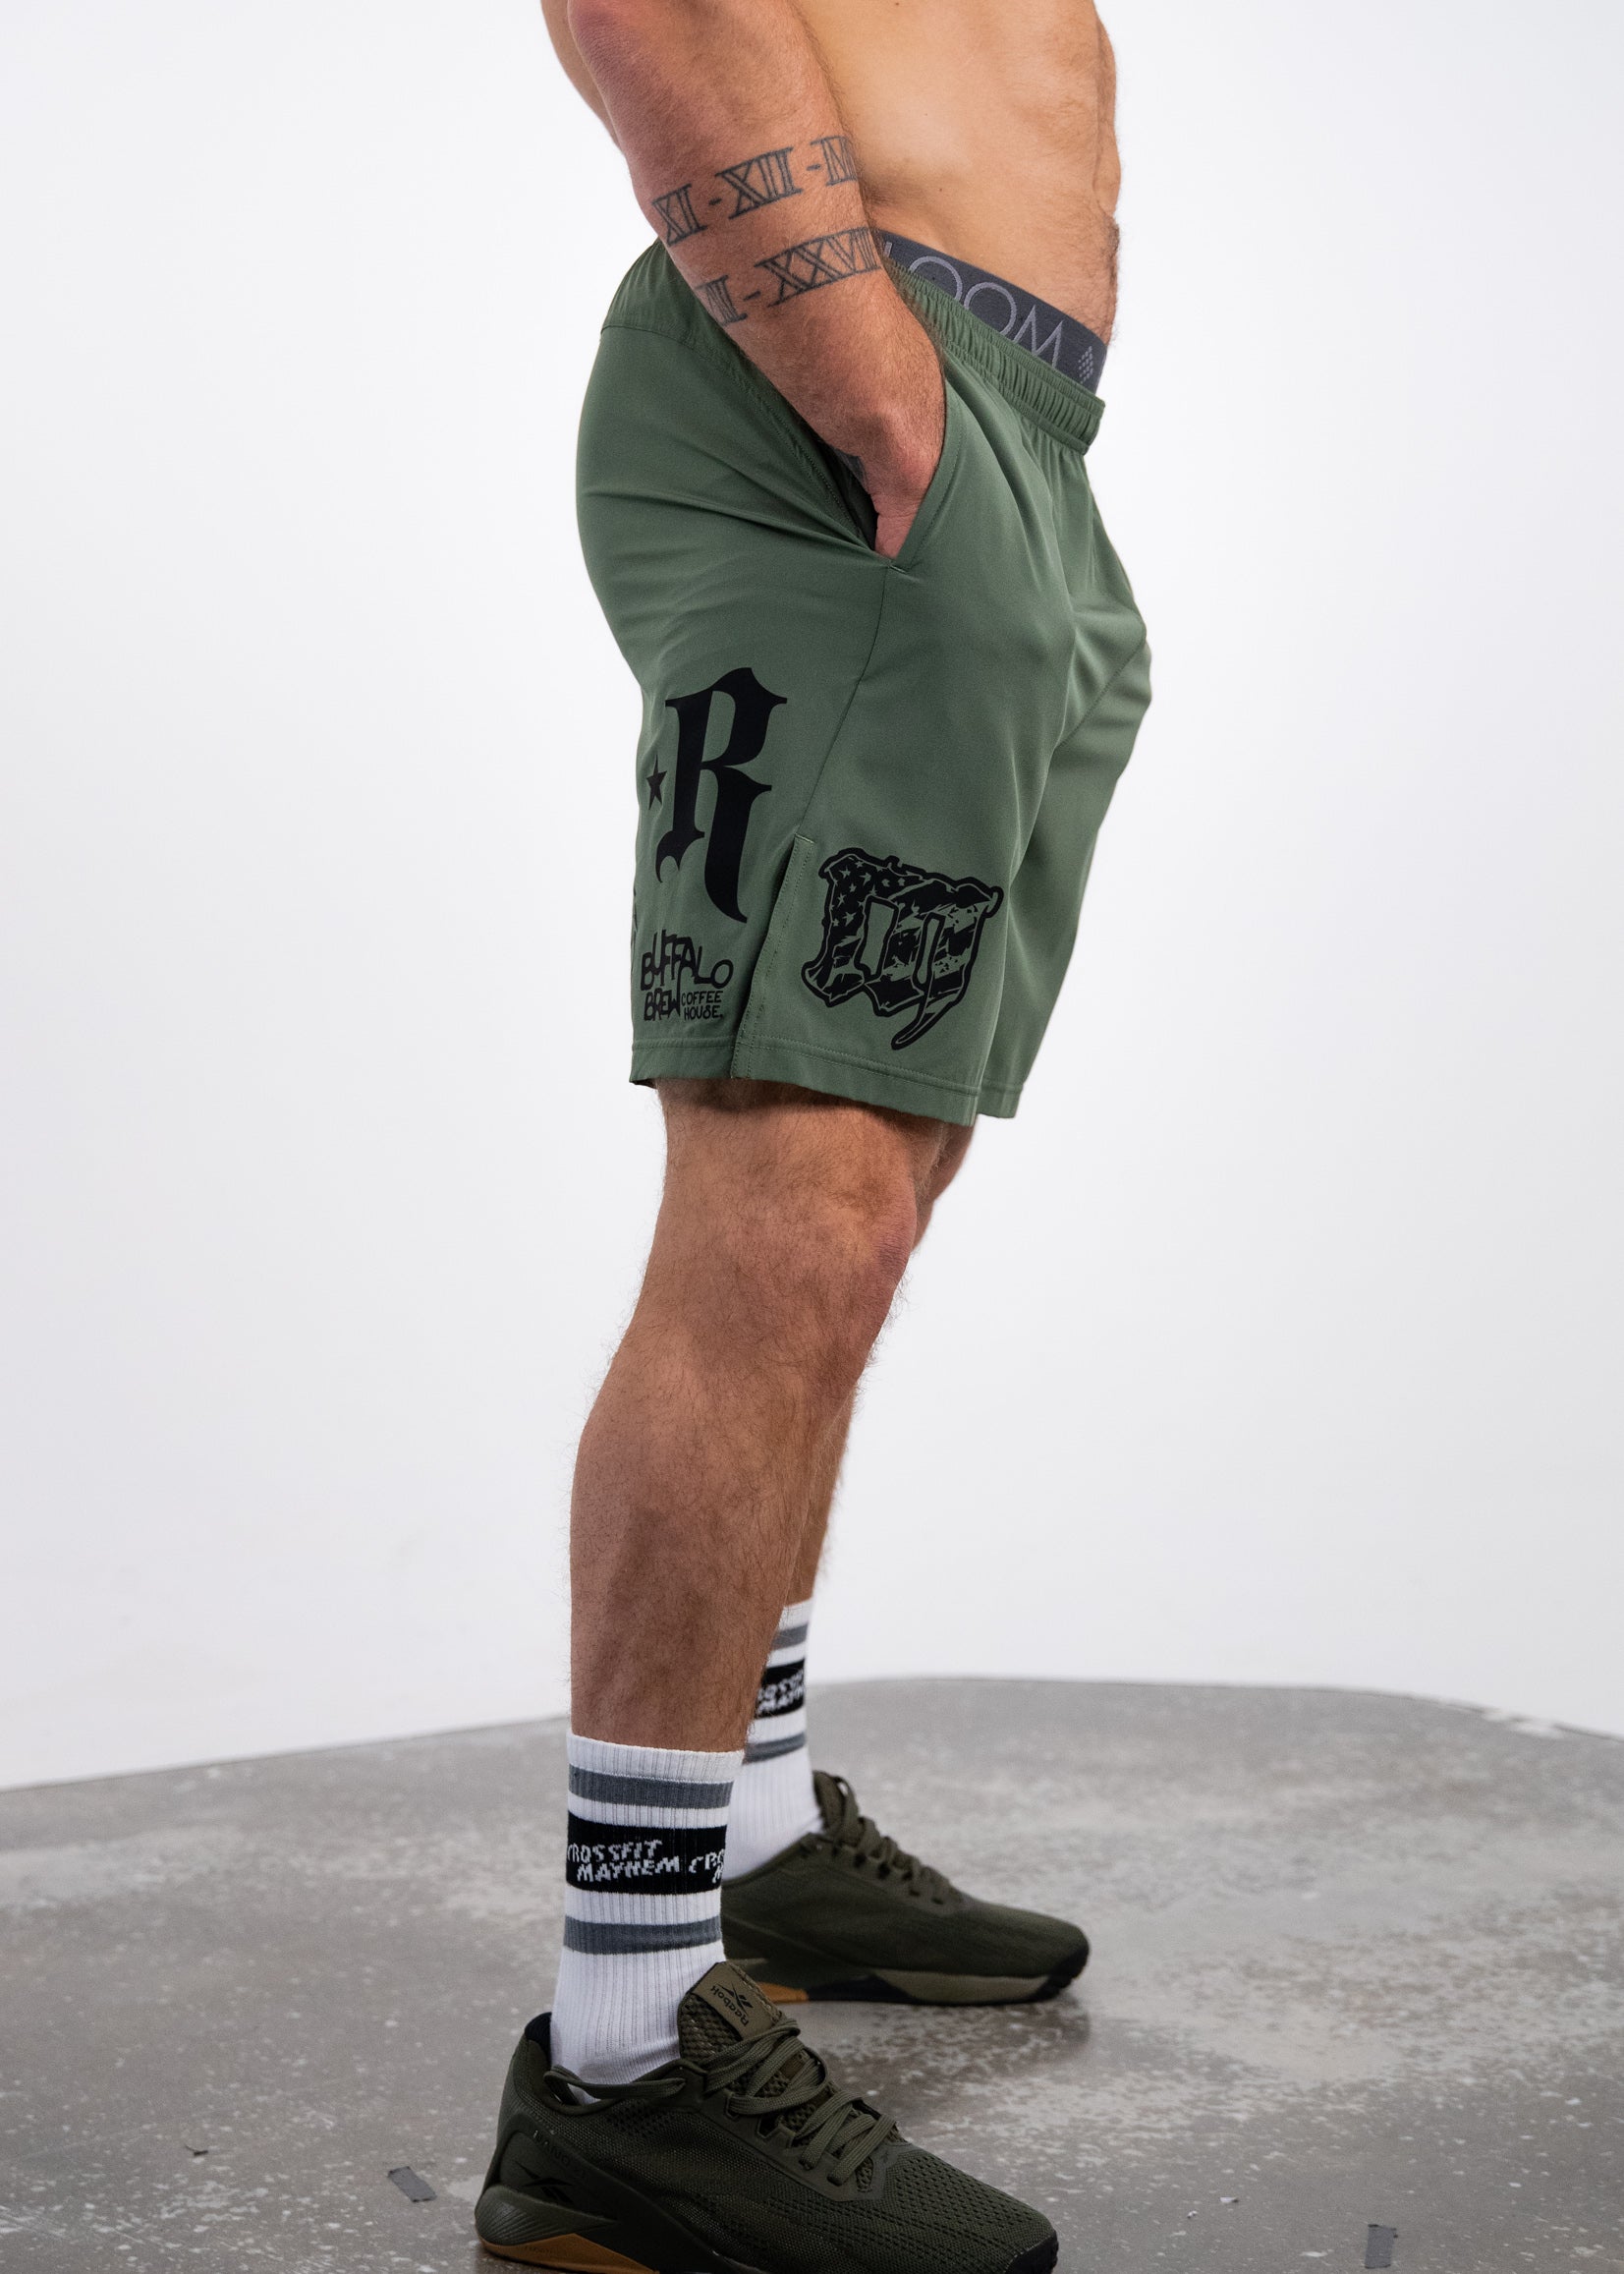 Udråbstegn dårlig At sige sandheden V2 Sponsor Shorts: OD Green – MAYHEM NATION